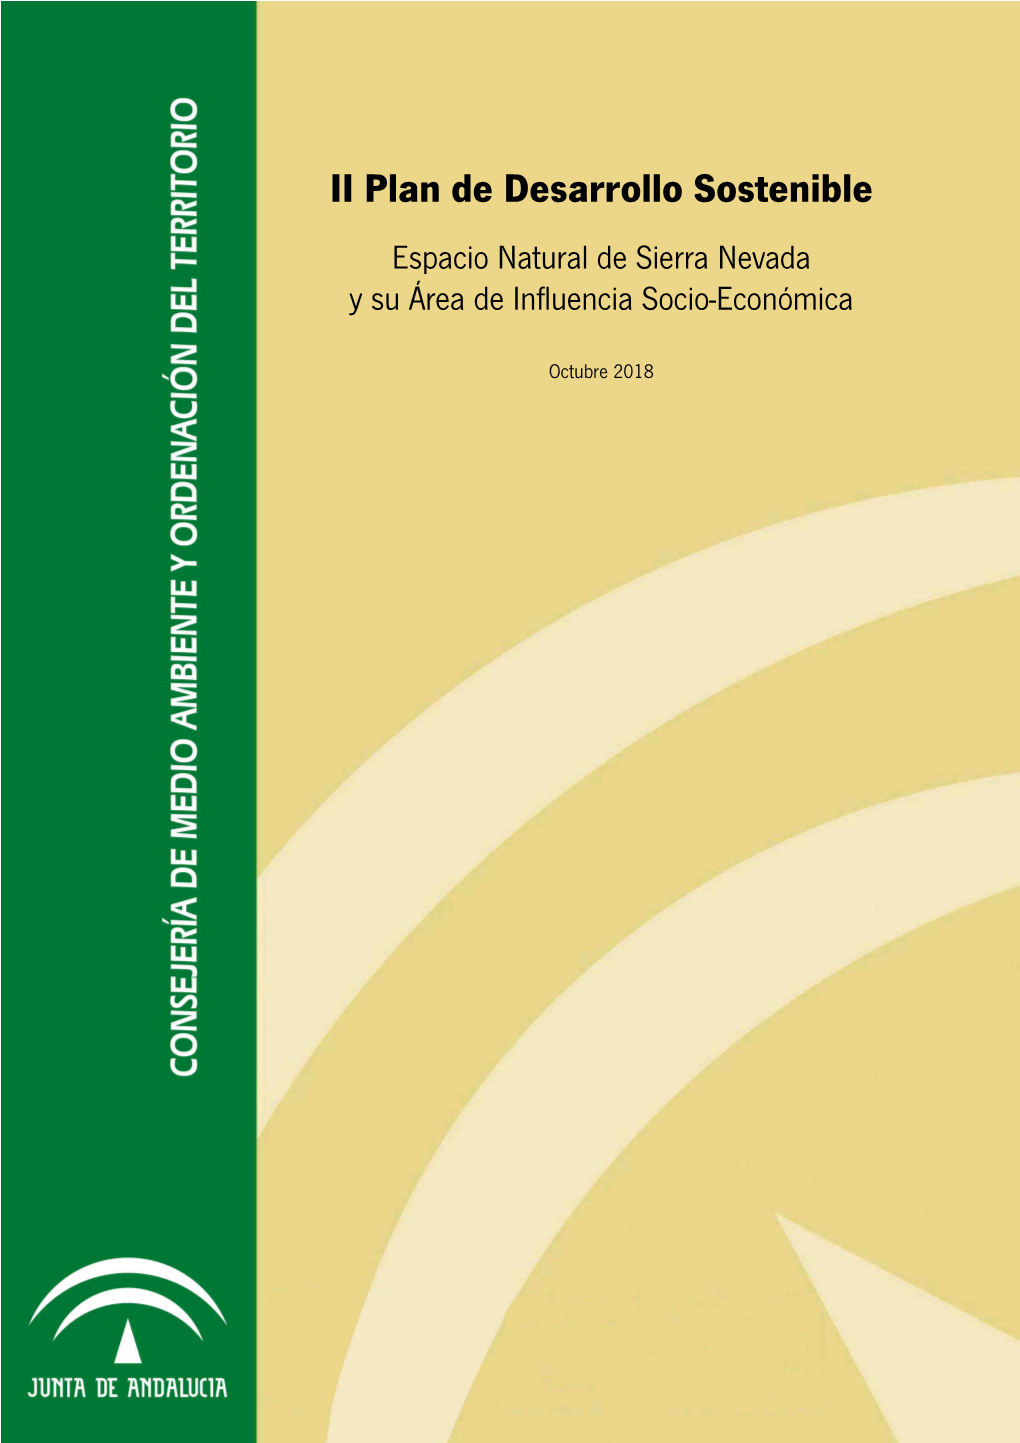 II Plan De Desarrollo Sostenible Espacio Natural De Sierra Nevada Y Su Área De Influencia Socio-Económica